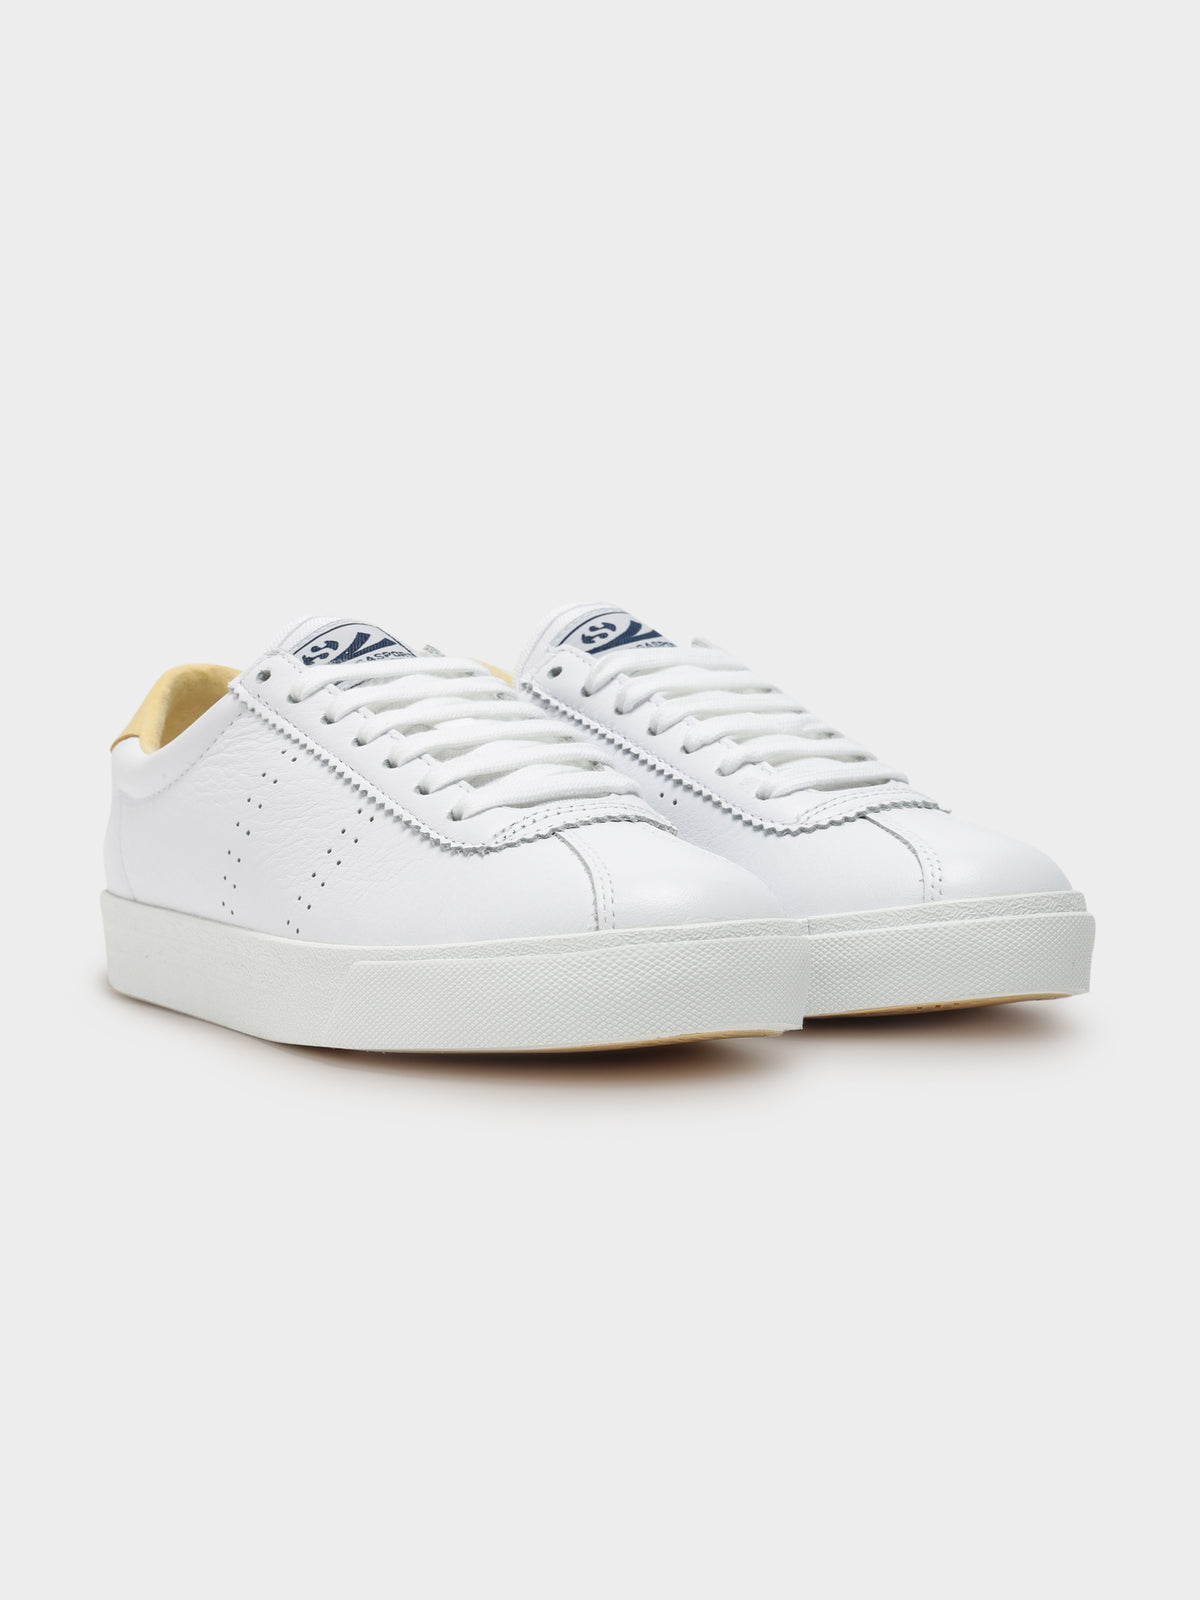 Unisex 2843 Comfleau Sneaker in White